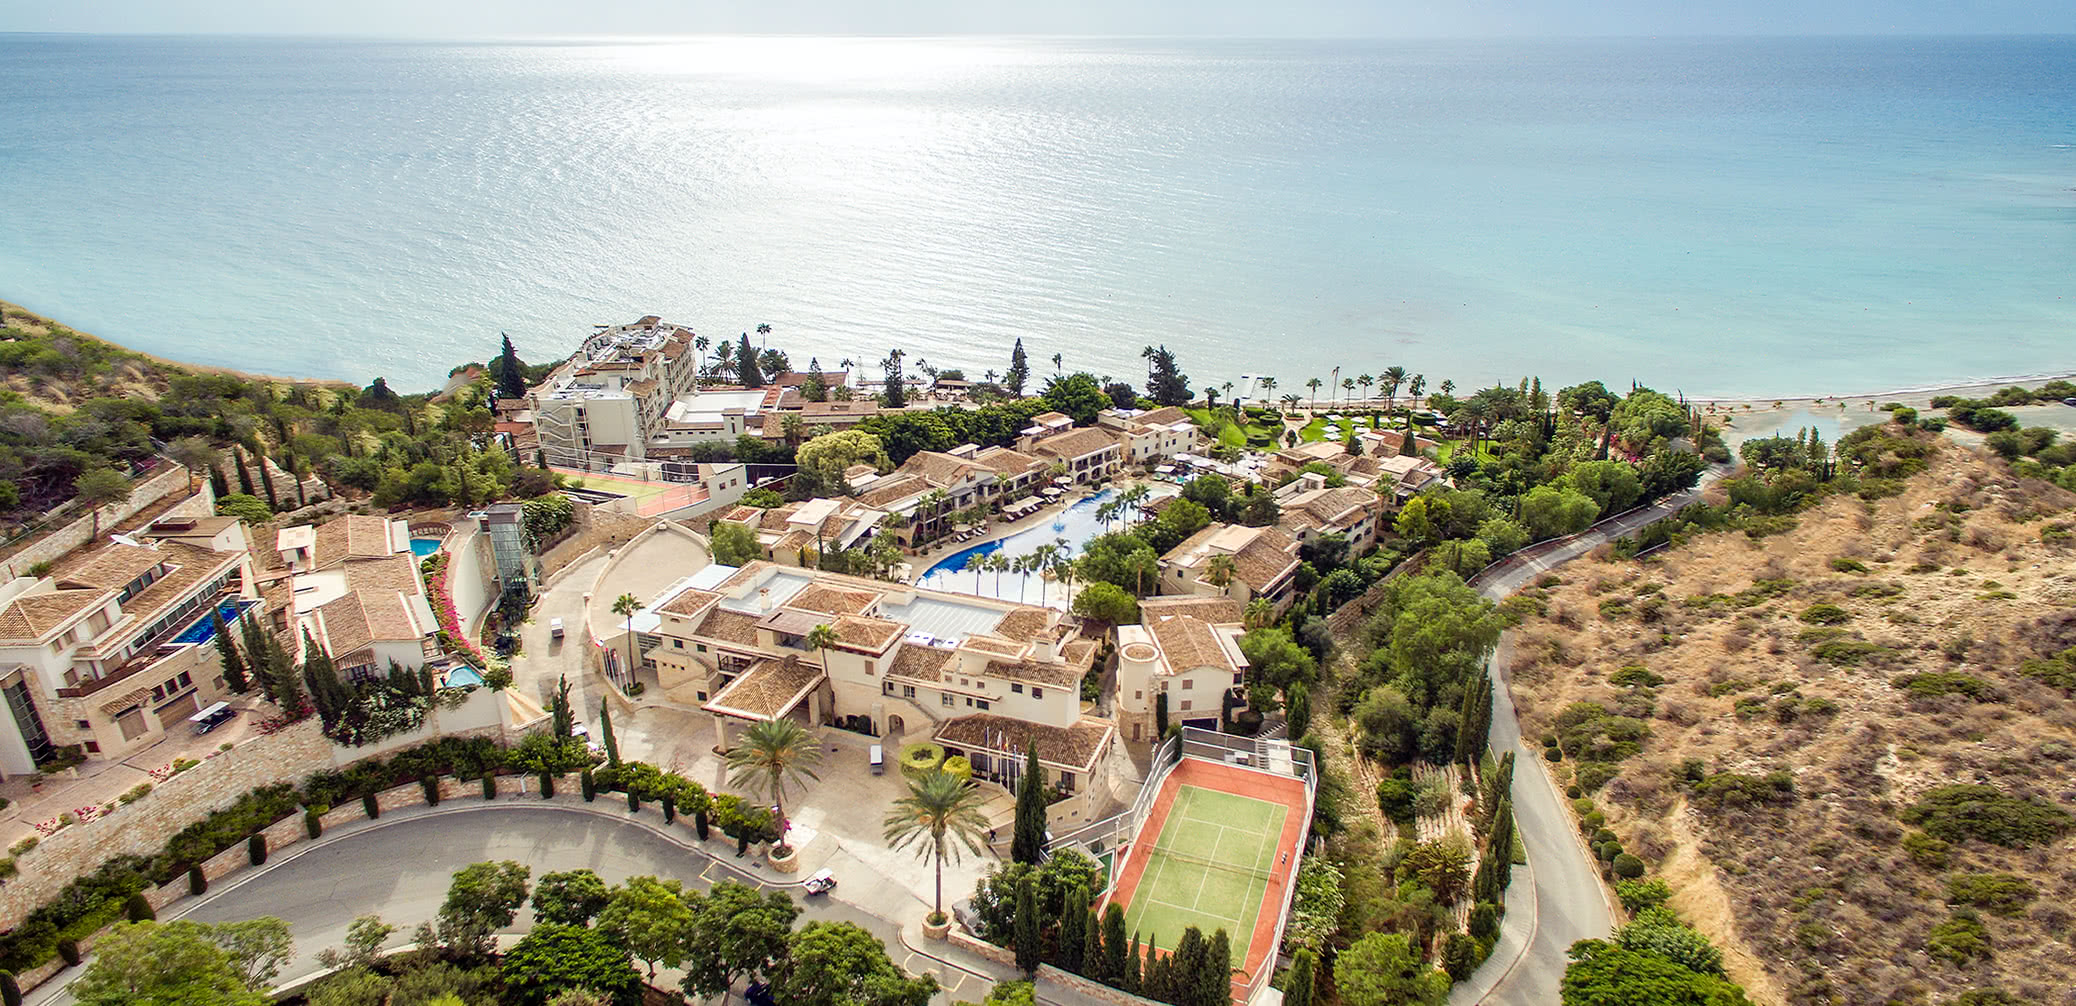 10 Best Luxury Hotels In Cyprus